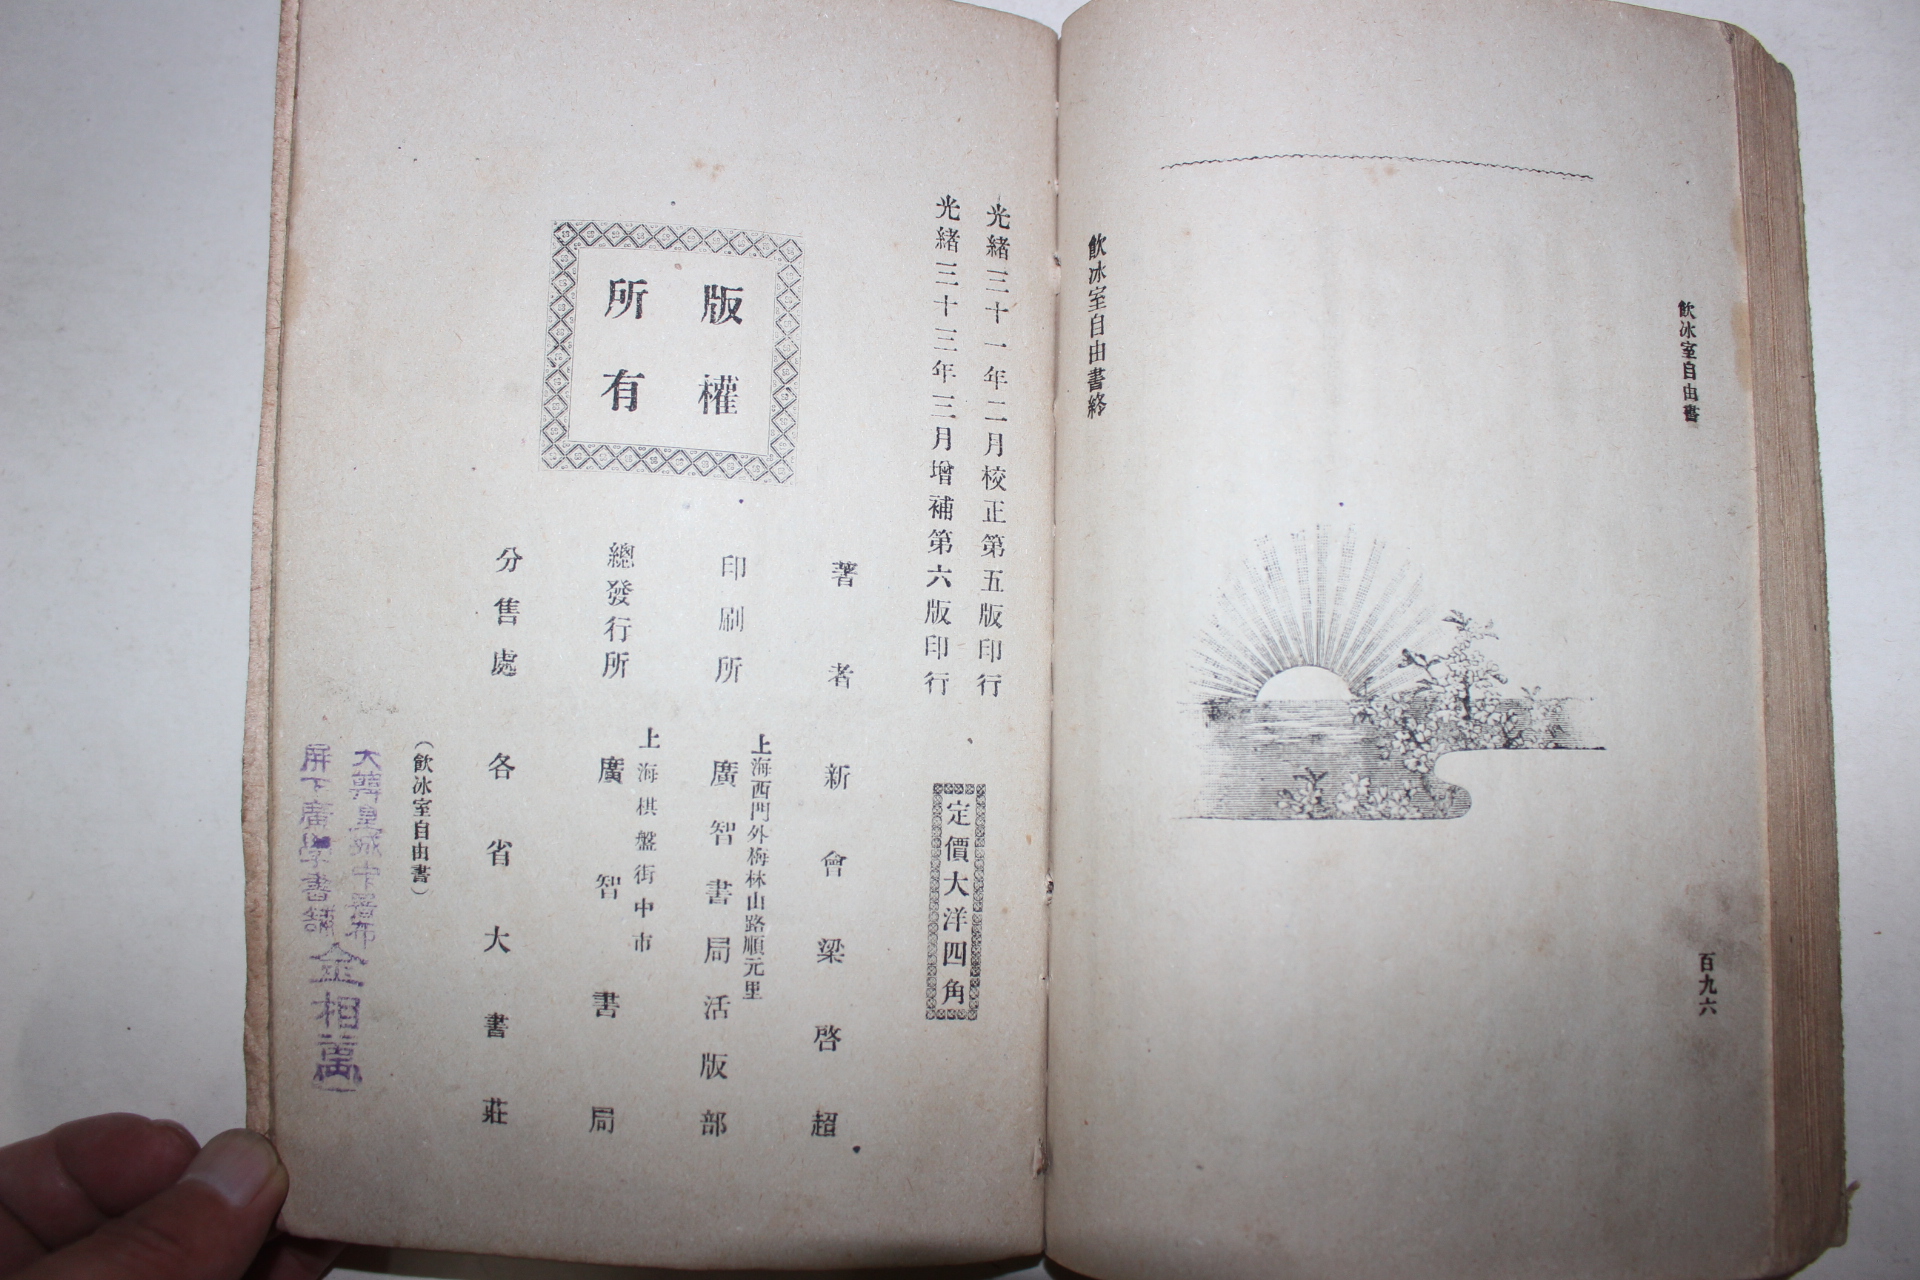 1907년(光緖33年) 중국상해간행본 양계초(梁啓超)링치차오 음빙실자유서(飮氷室自由書)